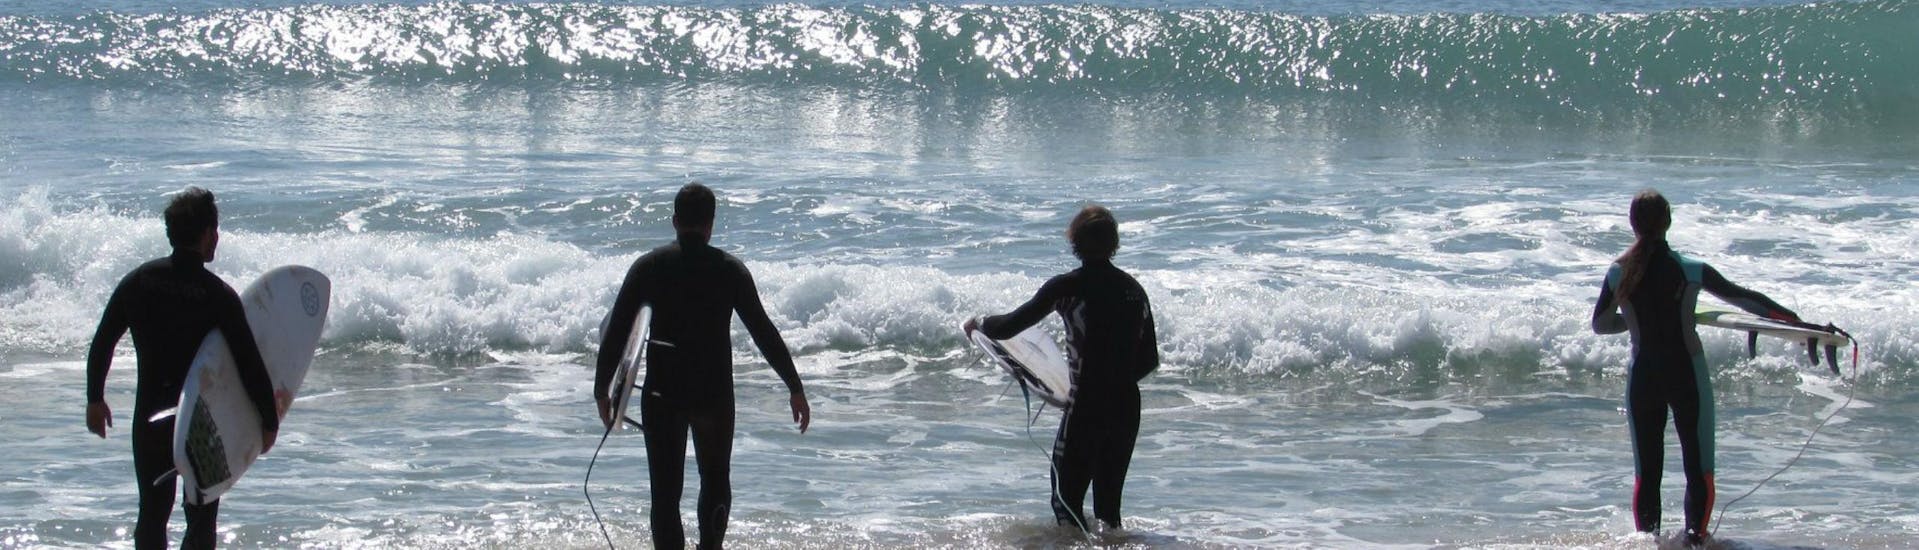 Curso de Surf en Lourinhã a partir de 6 años para todos los niveles.